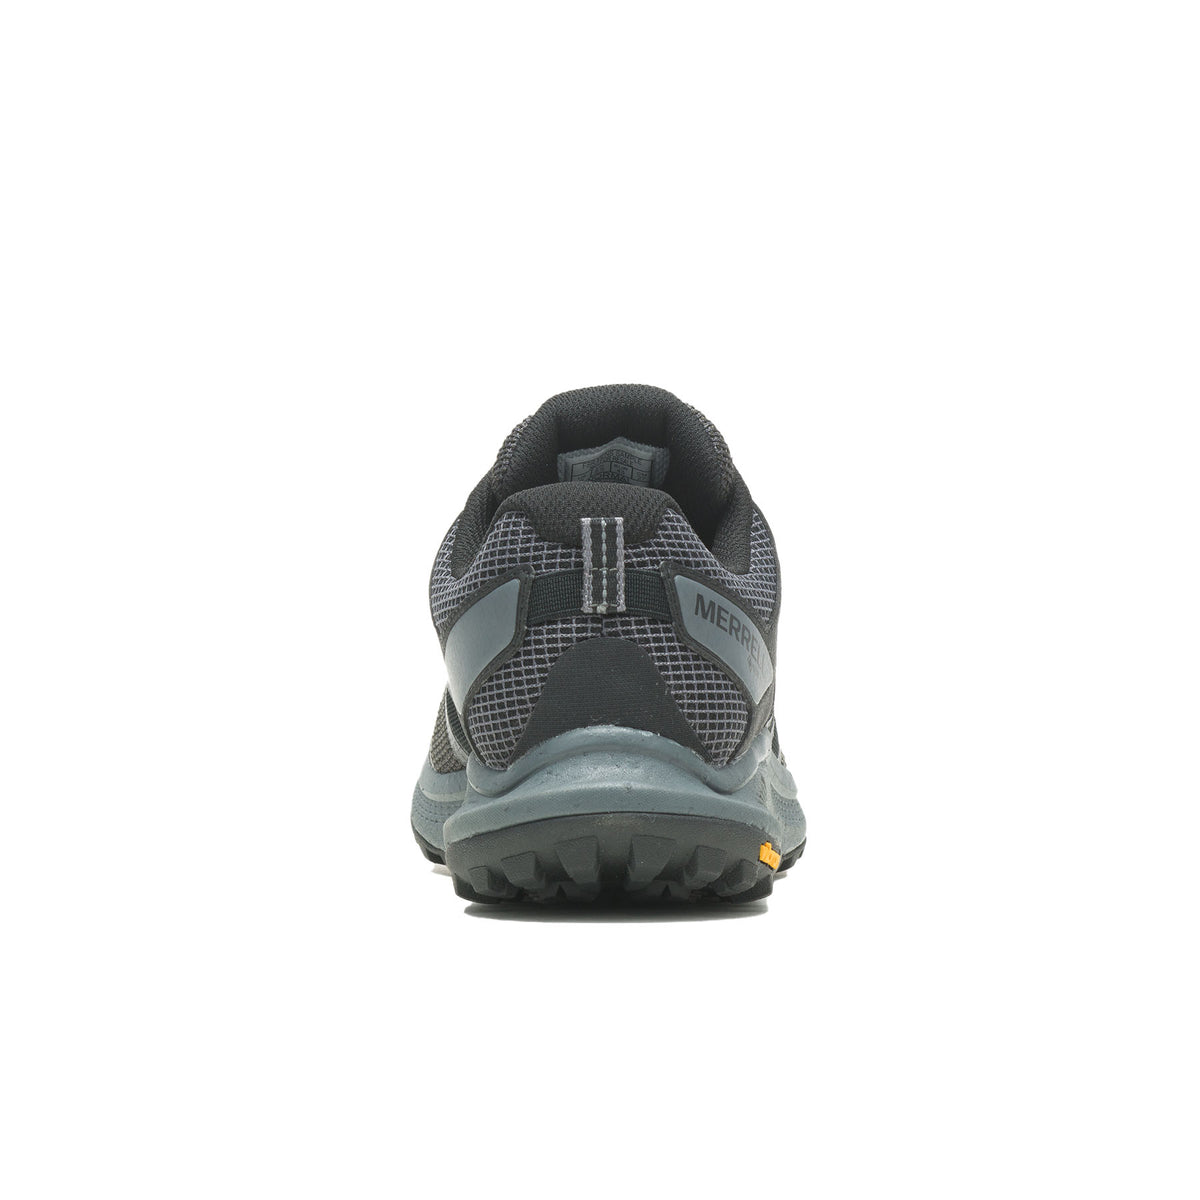 Merrell Men's Nova 3 GORE-TEX Walking Shoes 